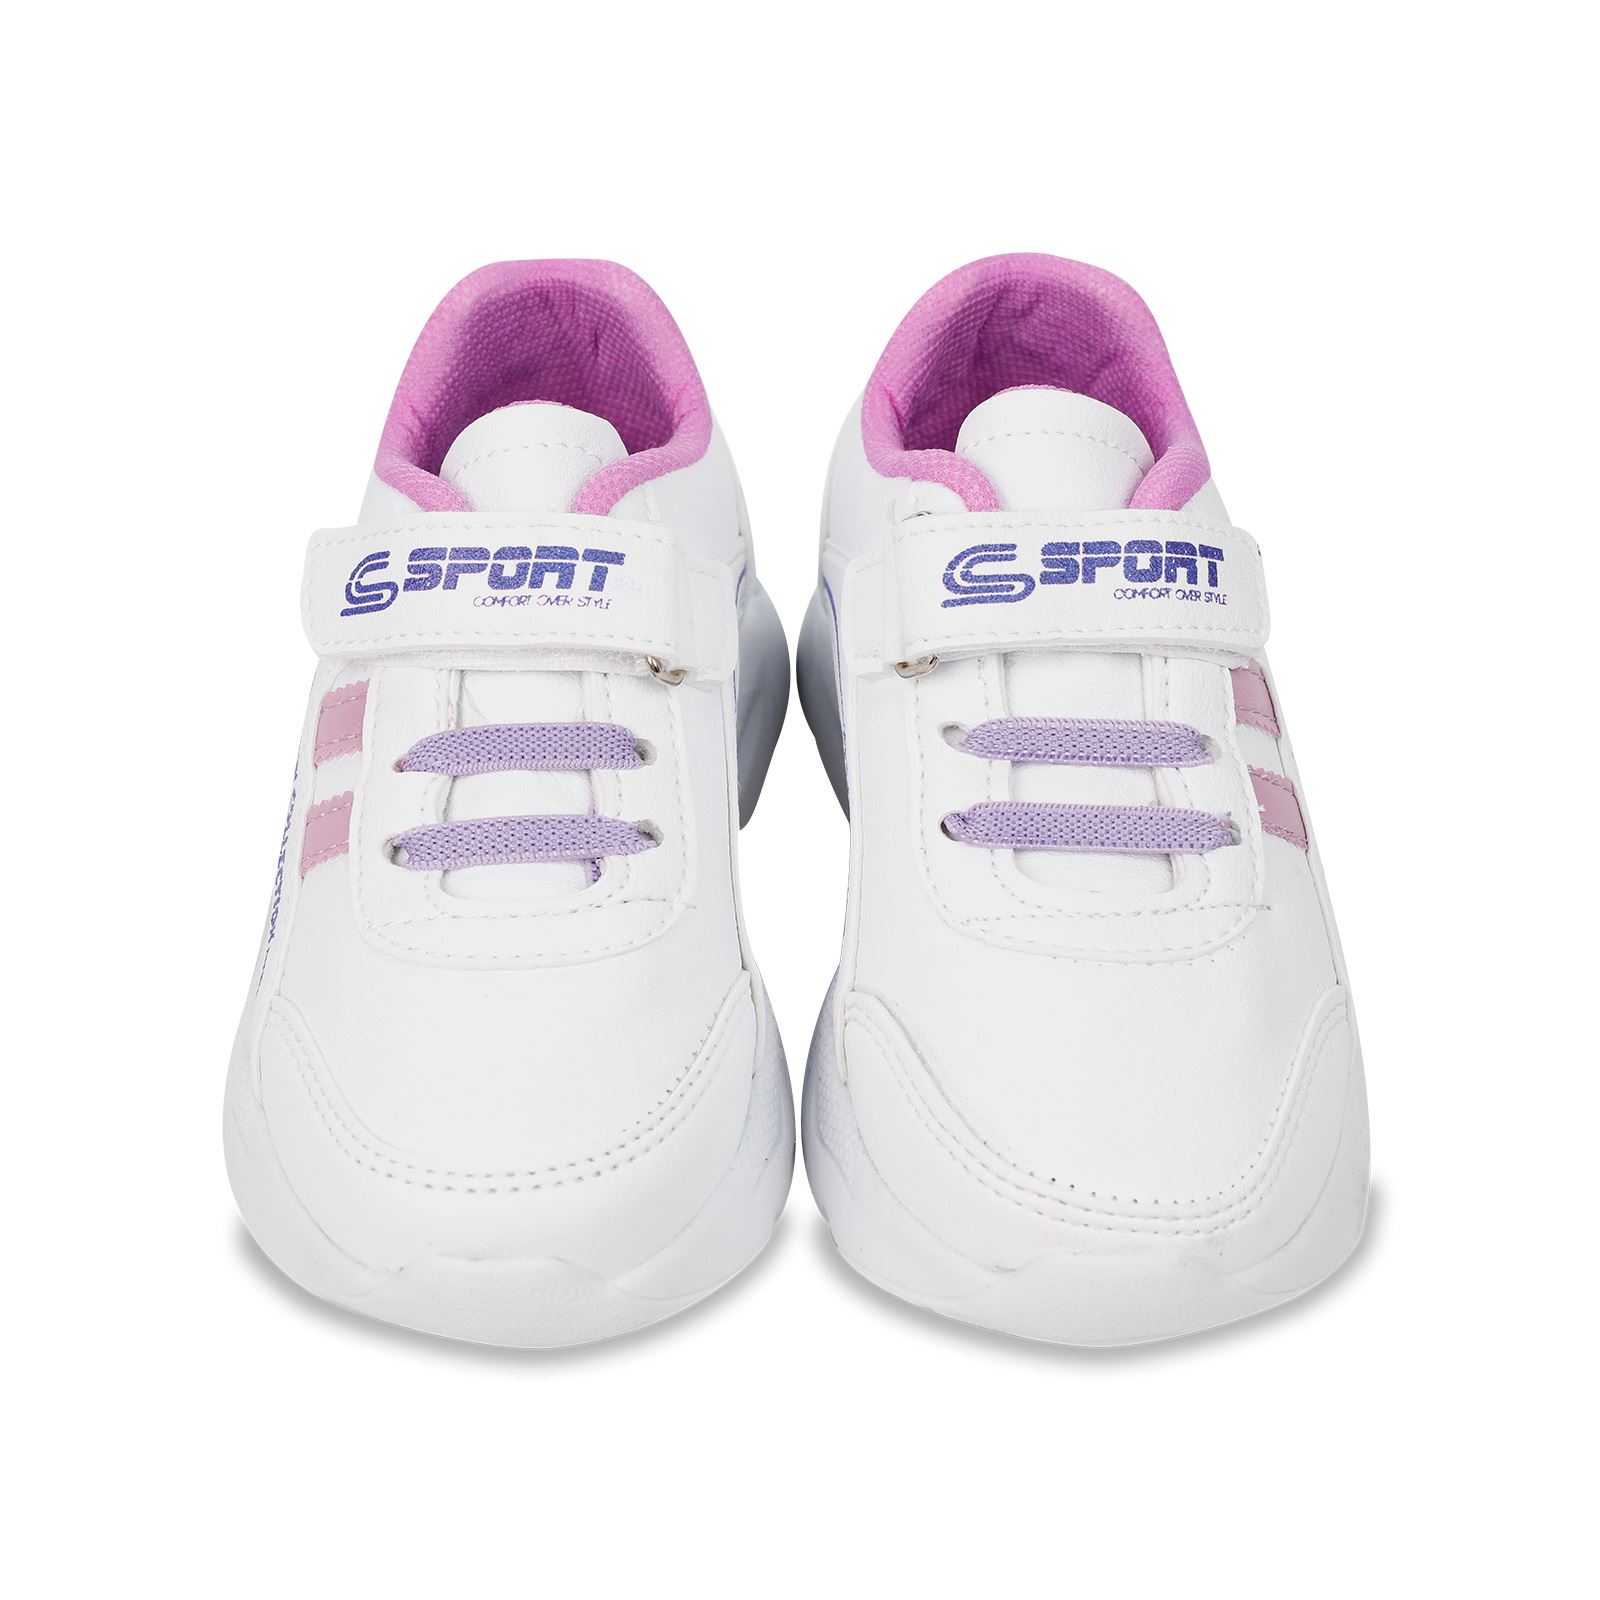 Civil Girls Kız Çocuk Spor Ayakkabı 26-29 Numara Beyaz